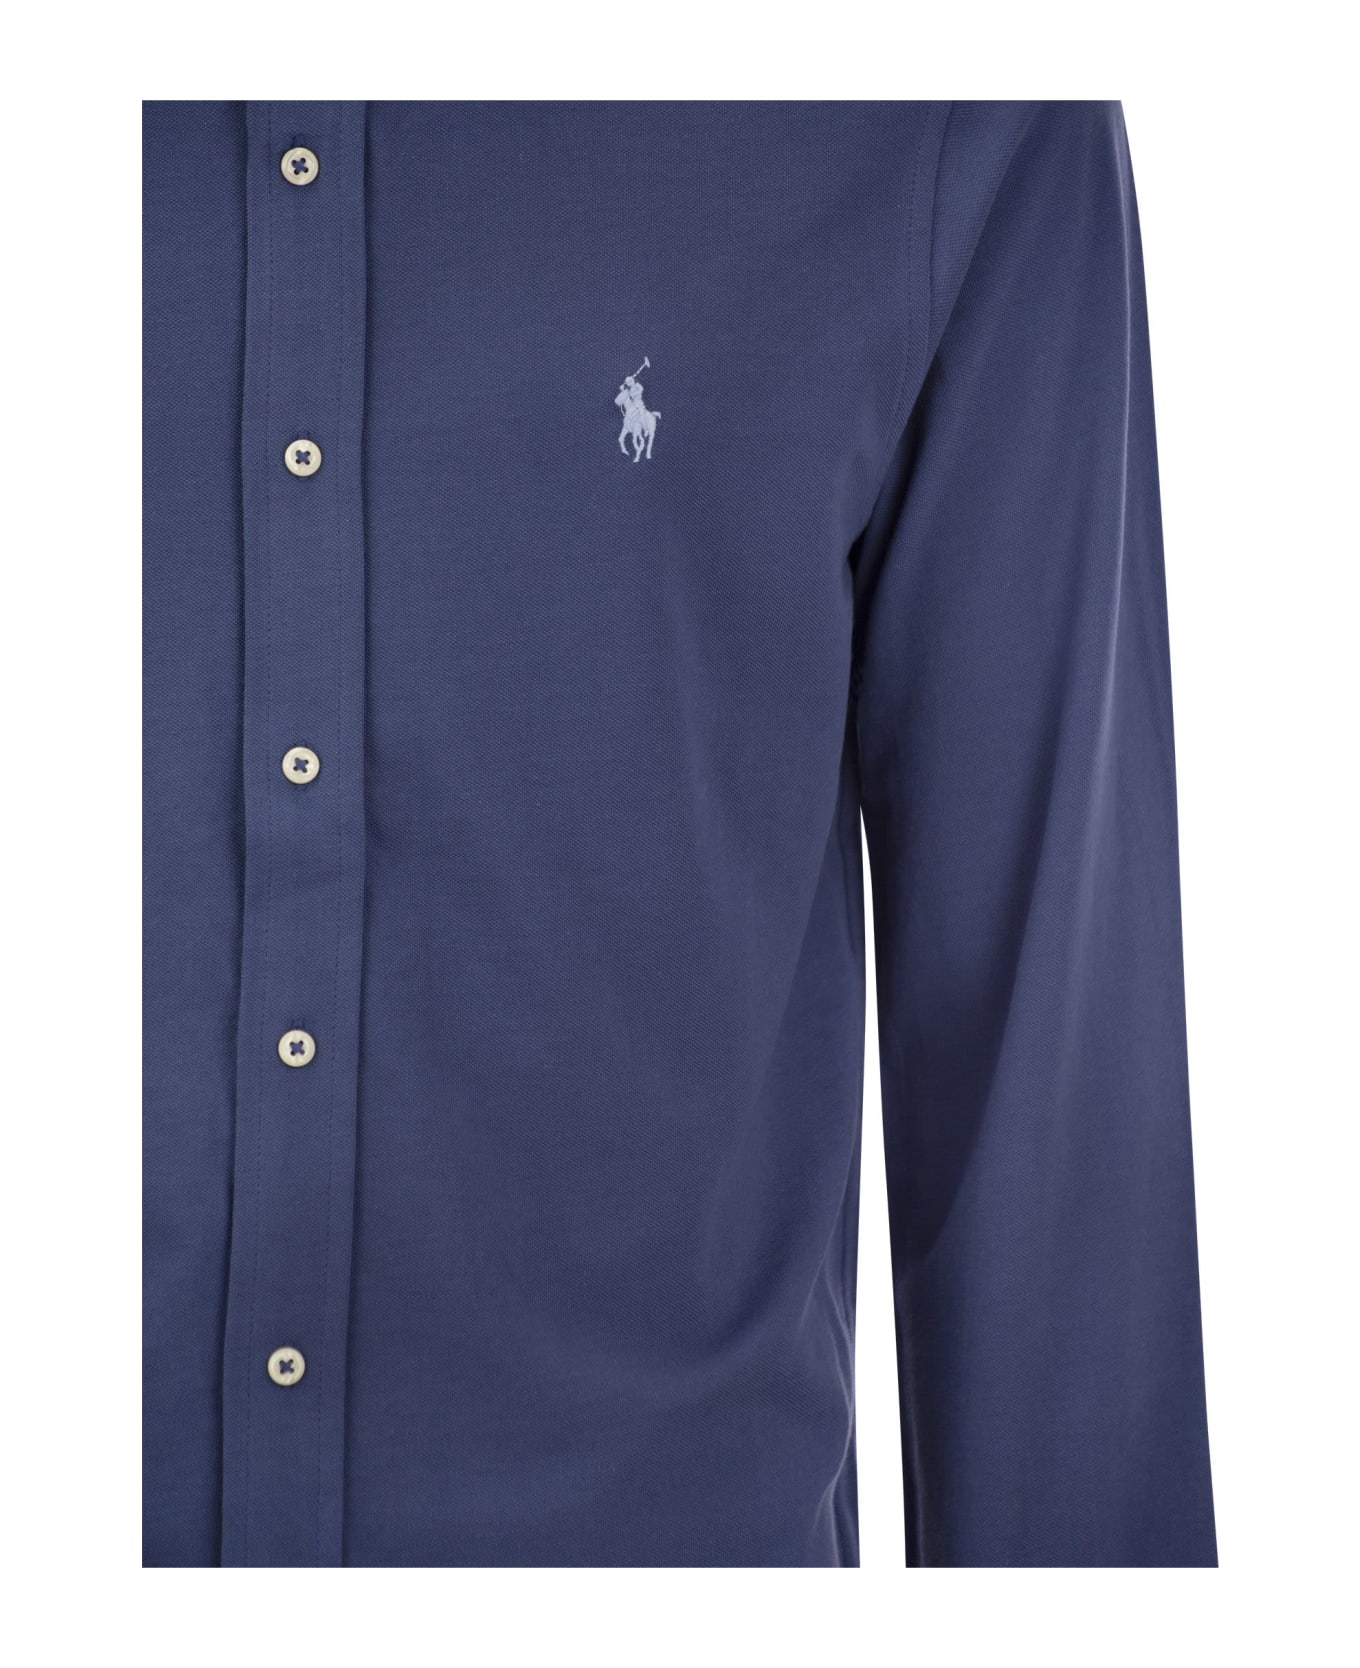 Polo Ralph Lauren Ultralight Pique Shirt - Old Royal シャツ